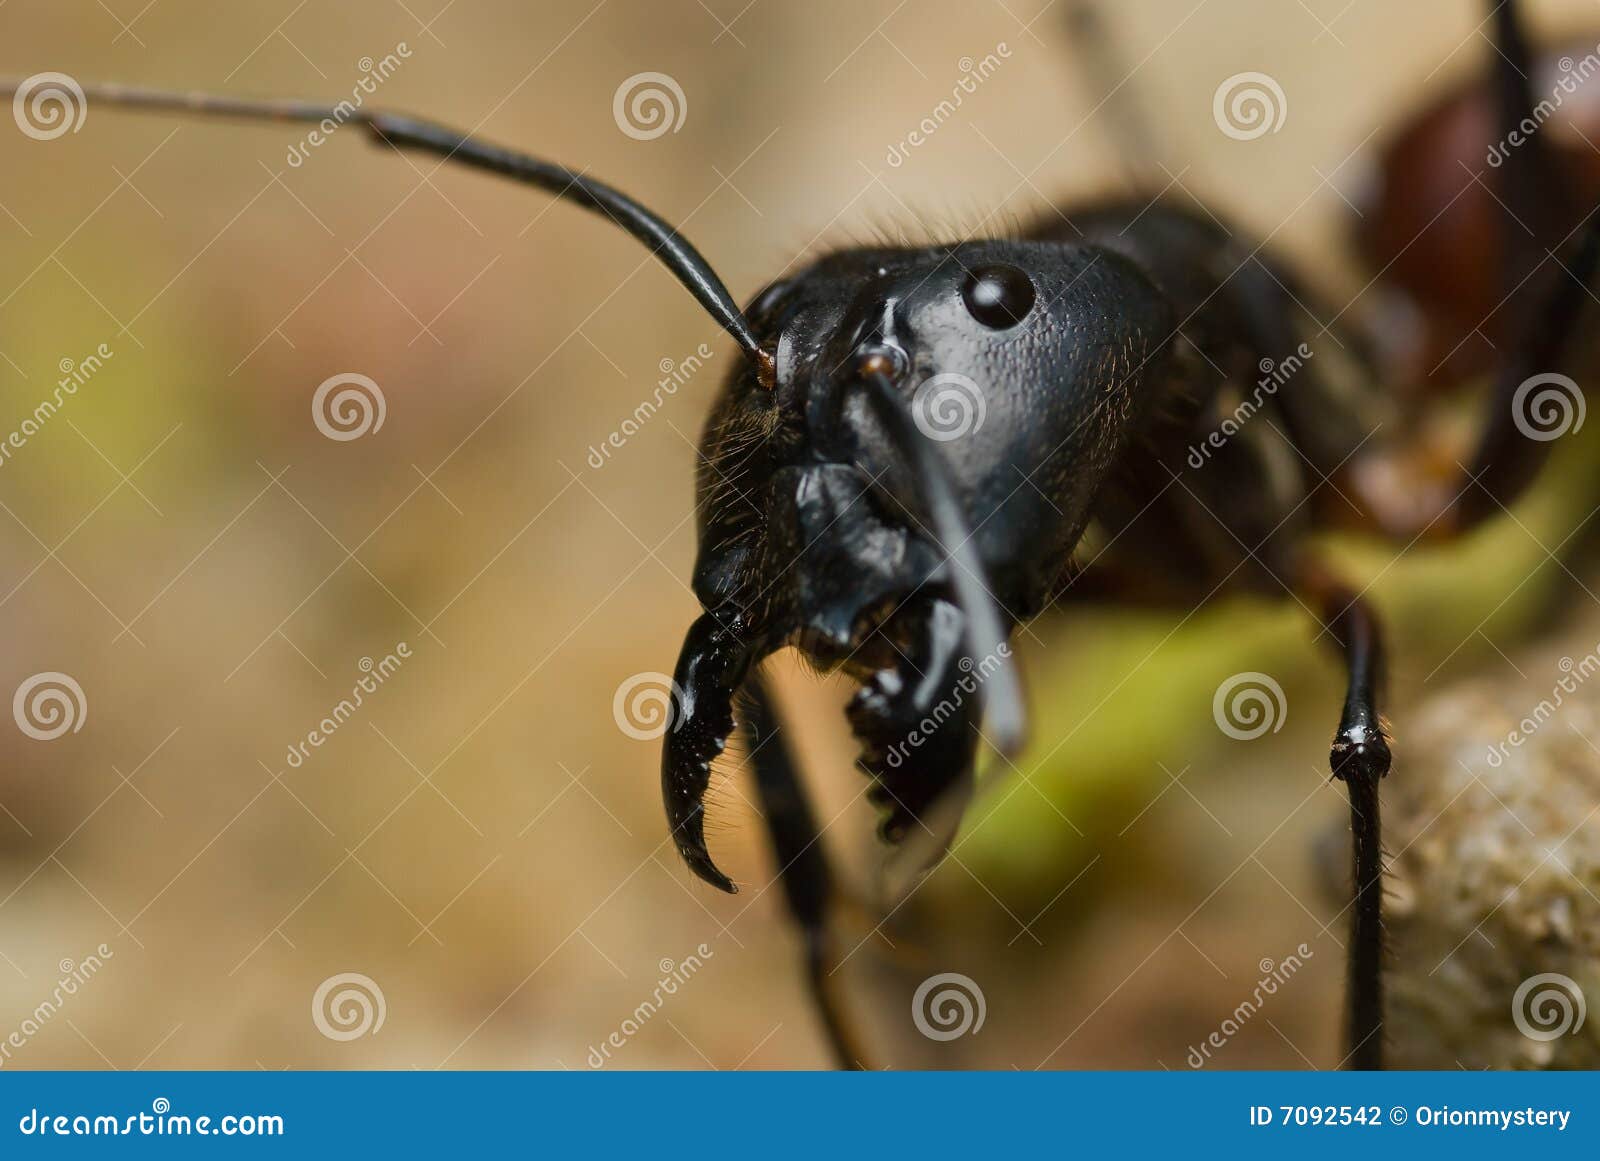 大食蚁兽-动物-图片